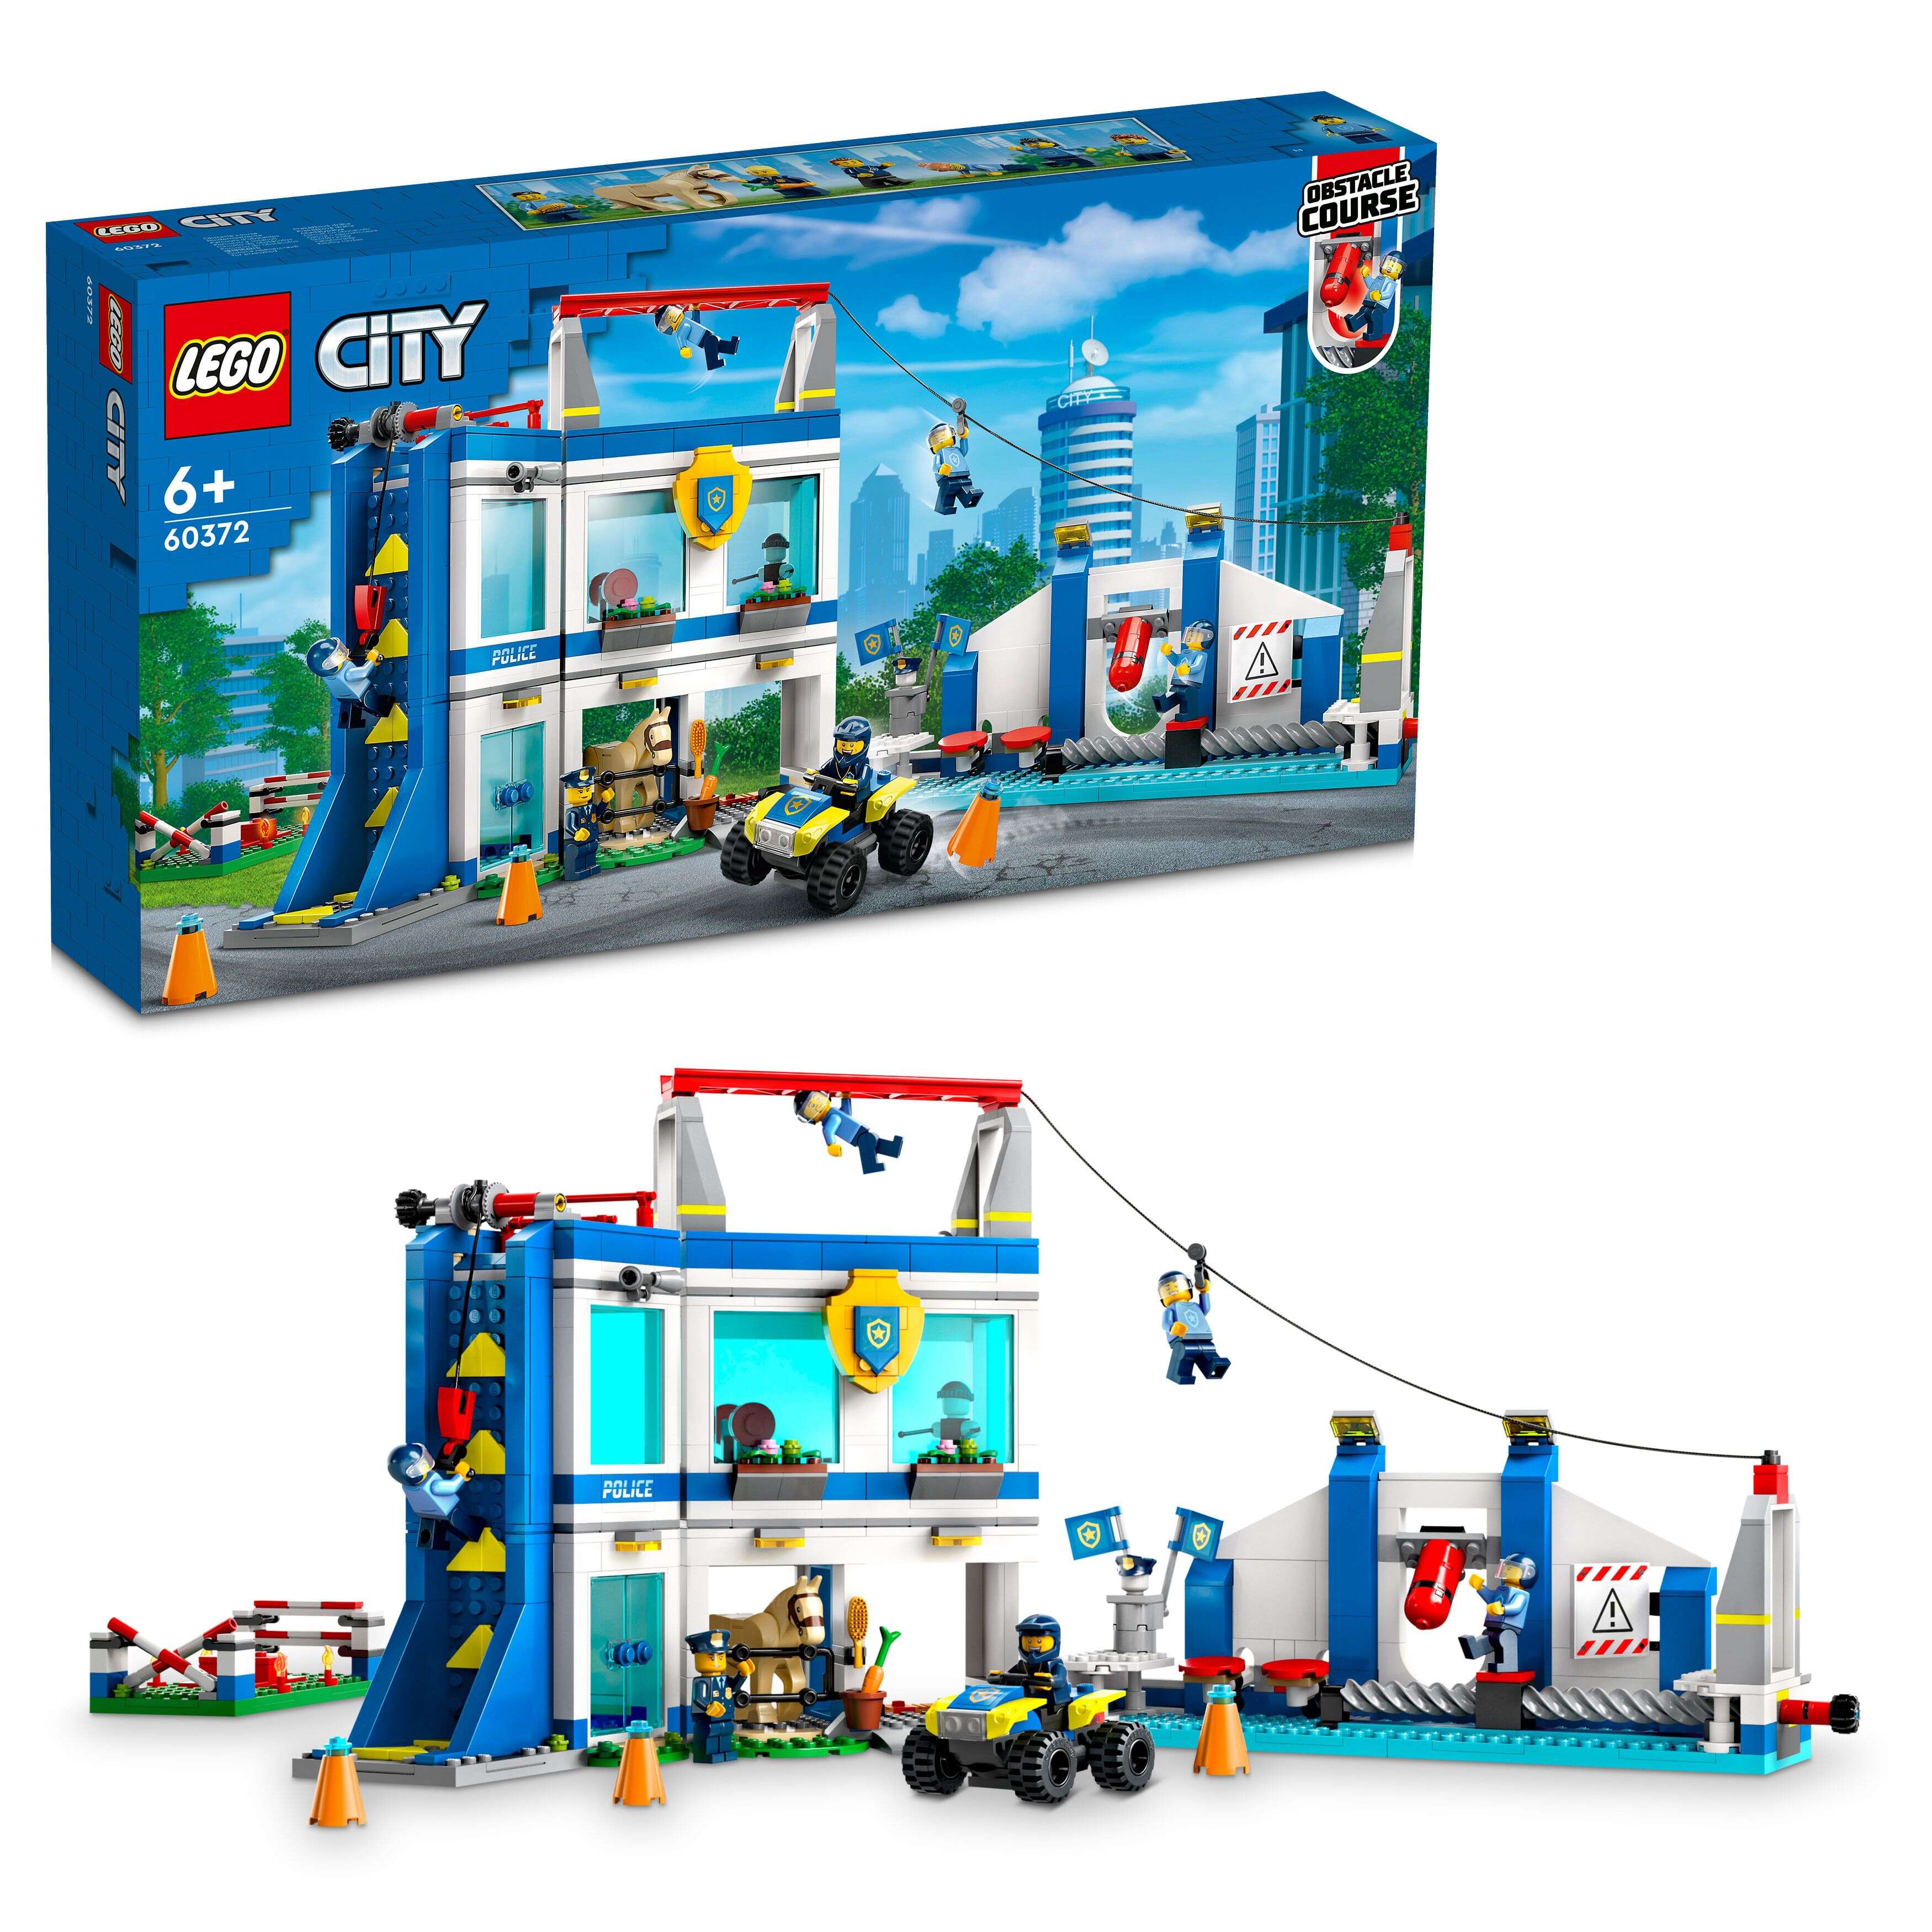 LEGO 60372 City Polizeischule, Quad, 6 Minifiguren, Pferd, Trainingsanlagen